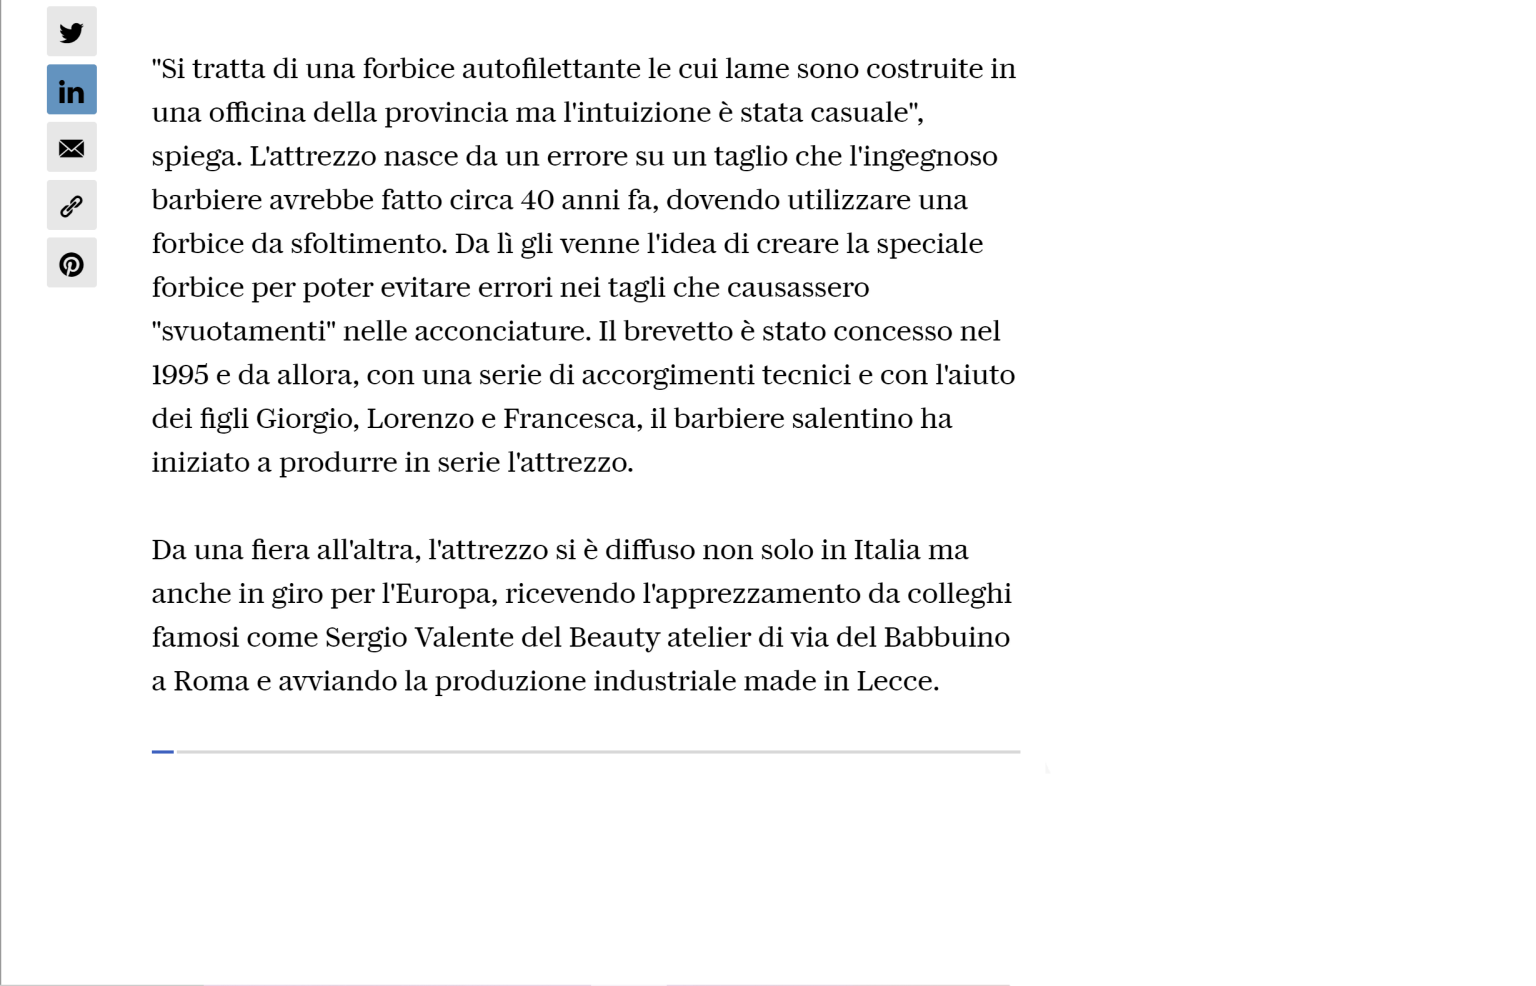 Forbice Elio - Articolo Repubblica - parte 3